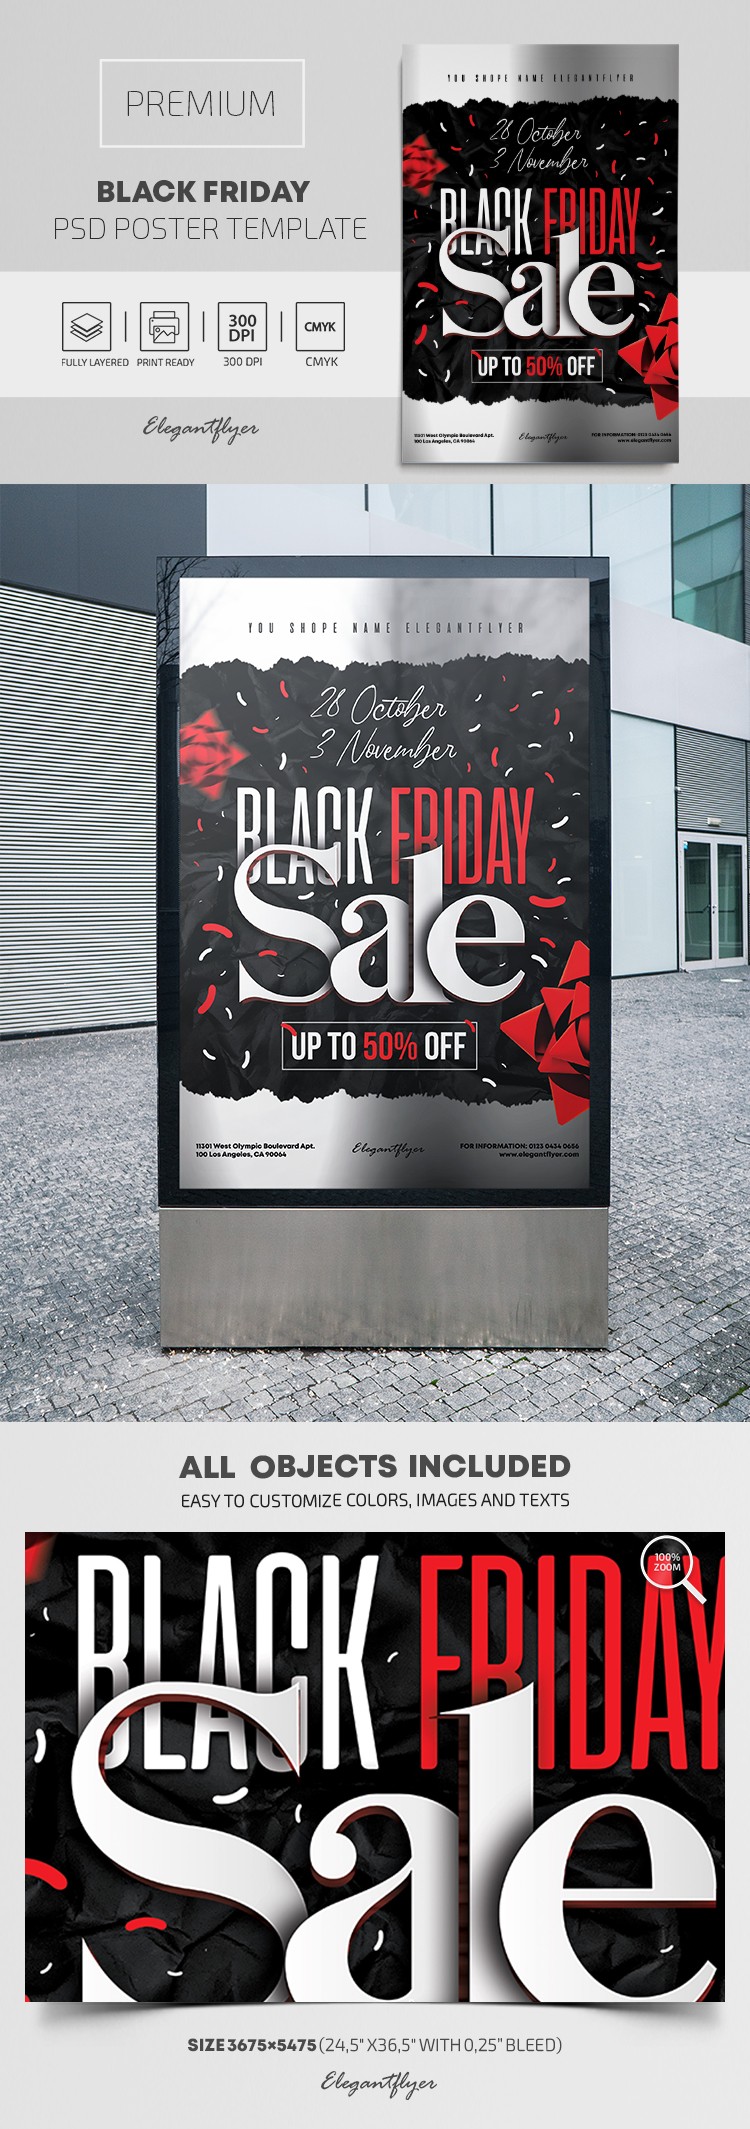 Black Friday Plakat by ElegantFlyer